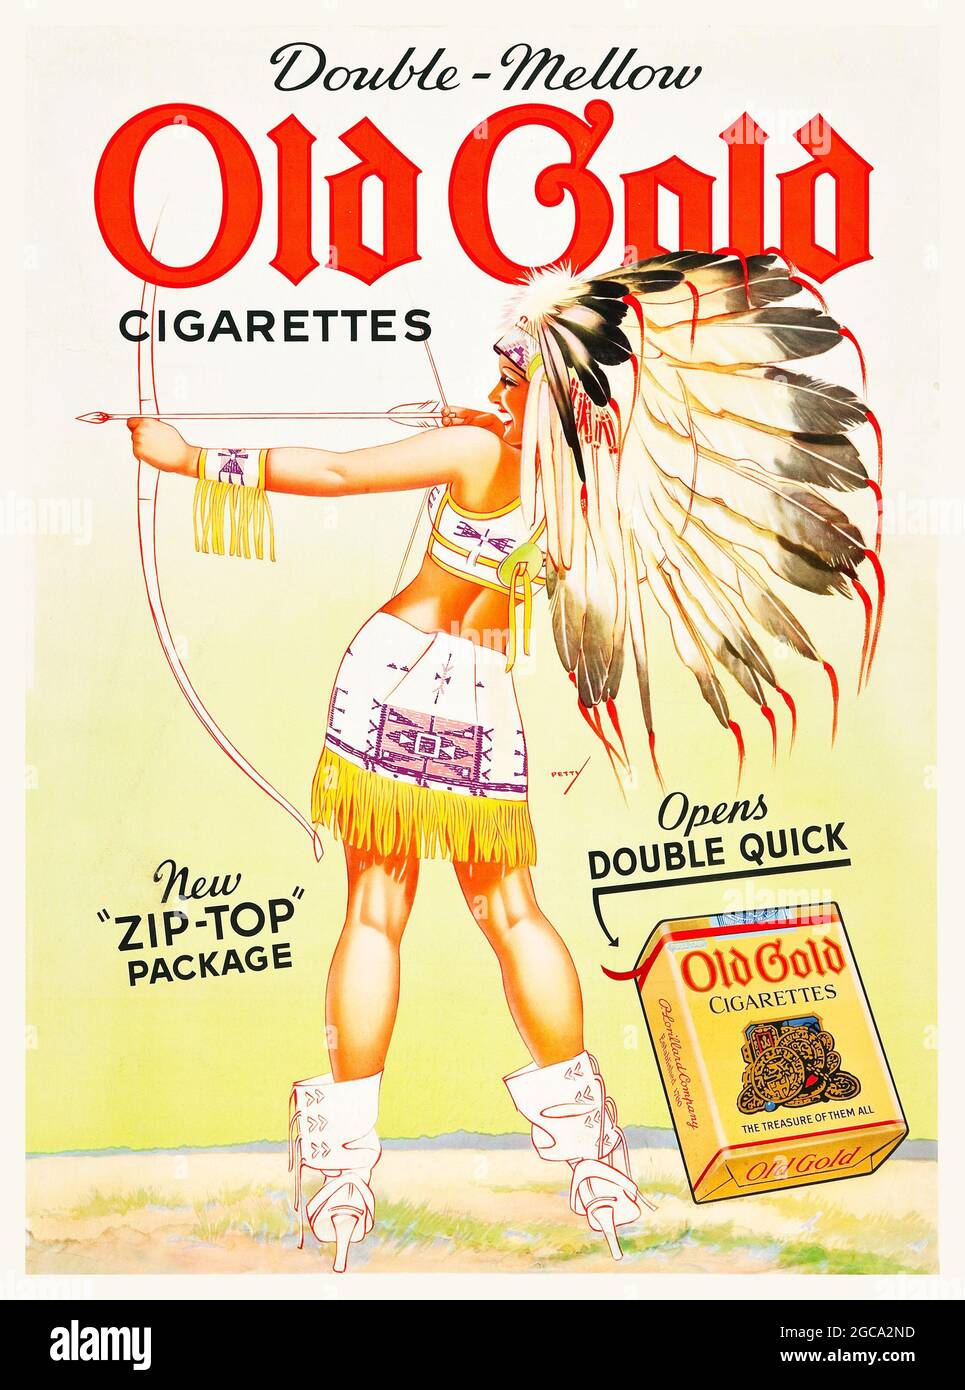 Publicité vintage / vieille publicité pour cigarettes Old Gold. Double-Mellow. Nouveau pack Zip Top. Paquet de cigarettes. Publicité pour le tabac. Banque D'Images